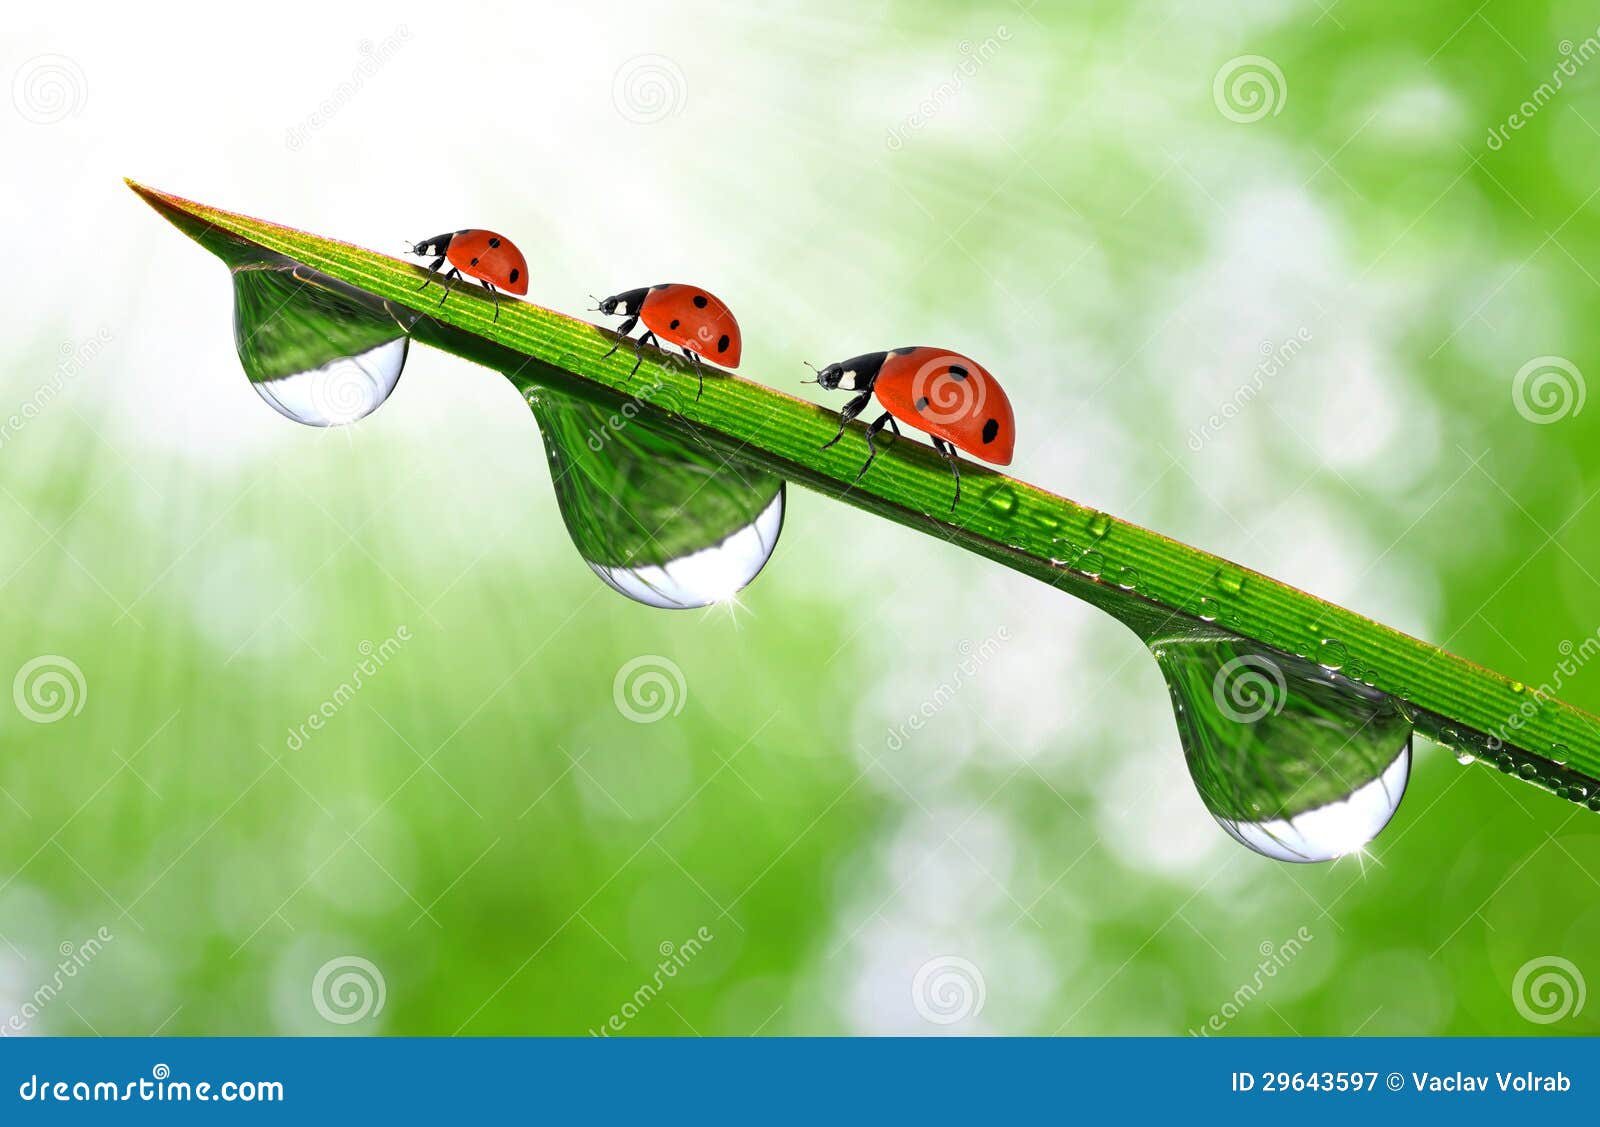 dew and ladybug